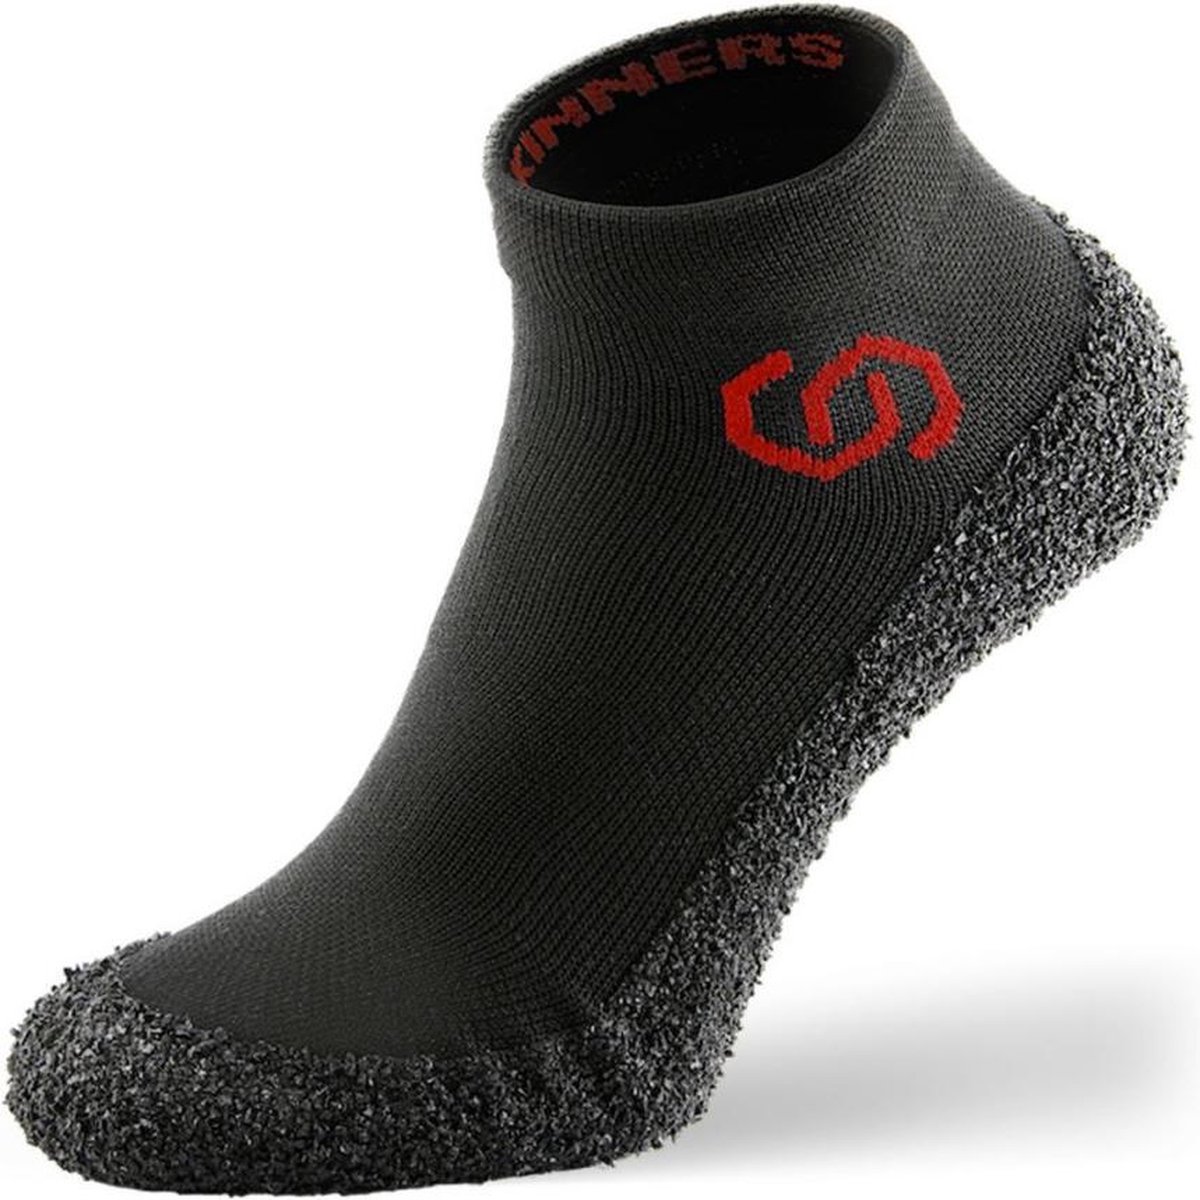 Skinners Barefoot sokschoenen - compact en lichtgewicht - Red - XXL